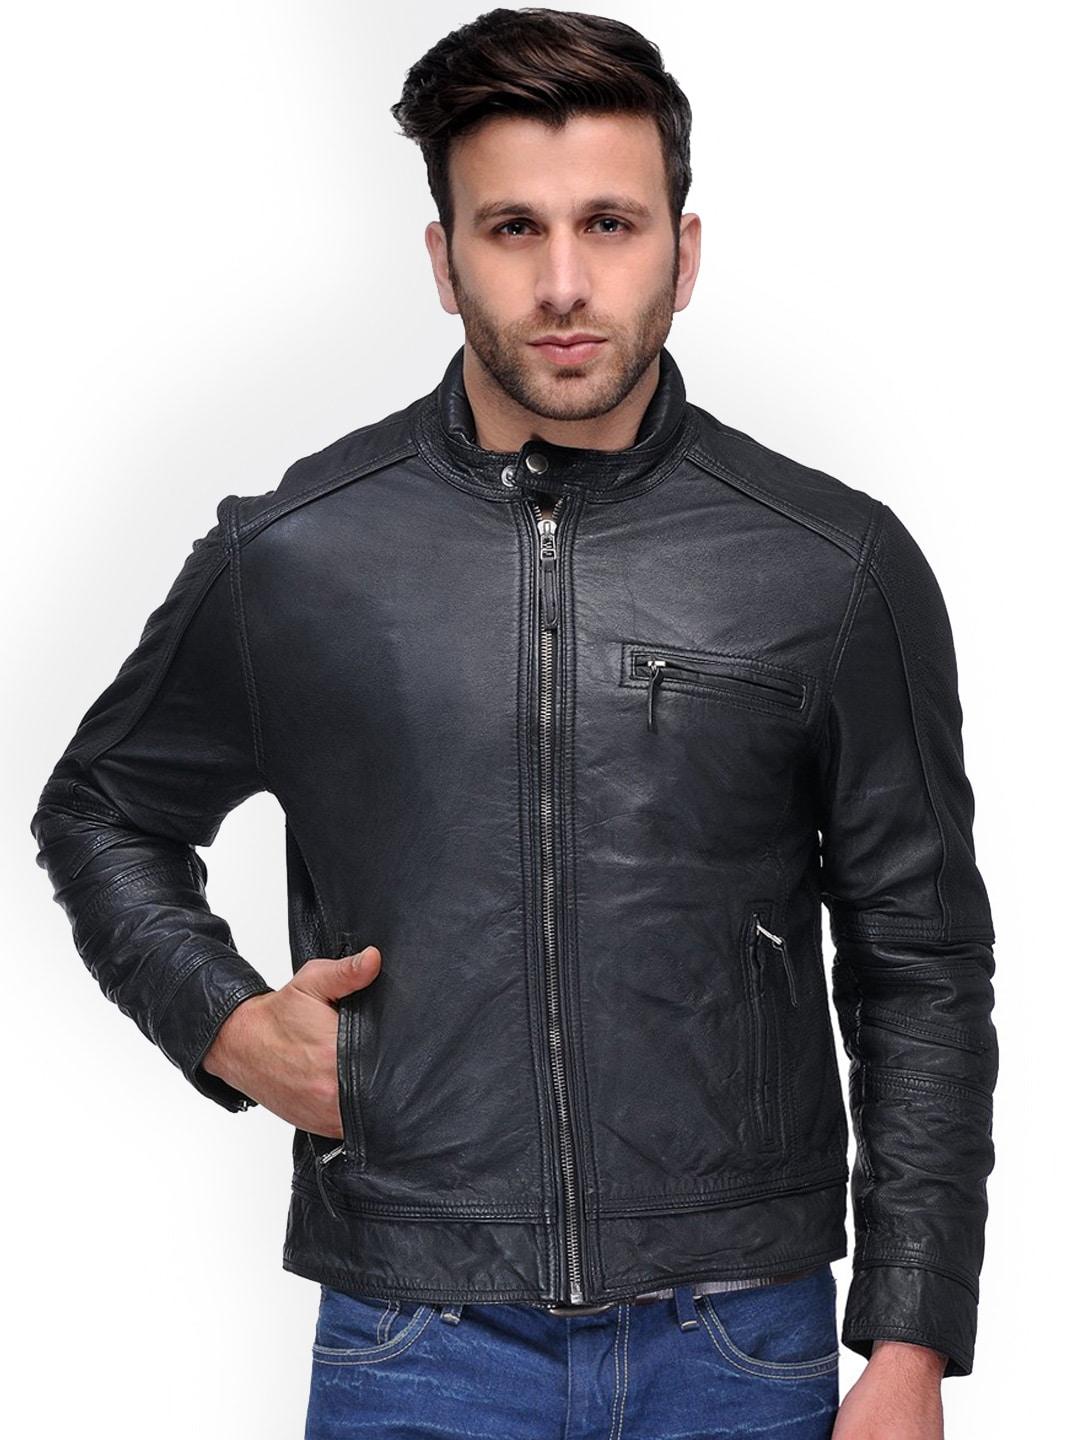 teakwood-leathers-men-black-leather-leather-jacket